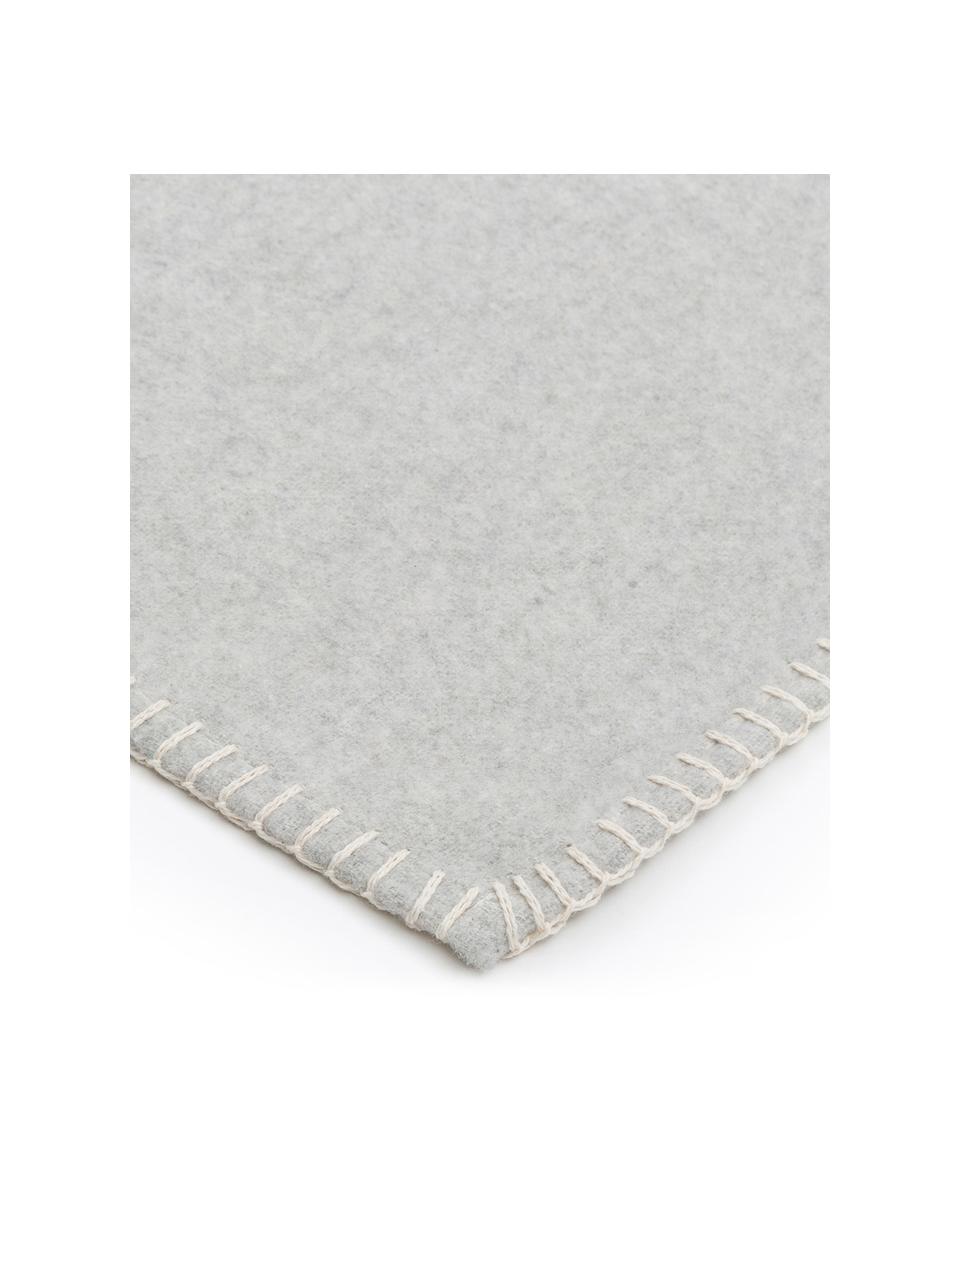 Plaid gris clair flanelle de coton Sylt, Gris clair, larg. 140 x long. 200 cm